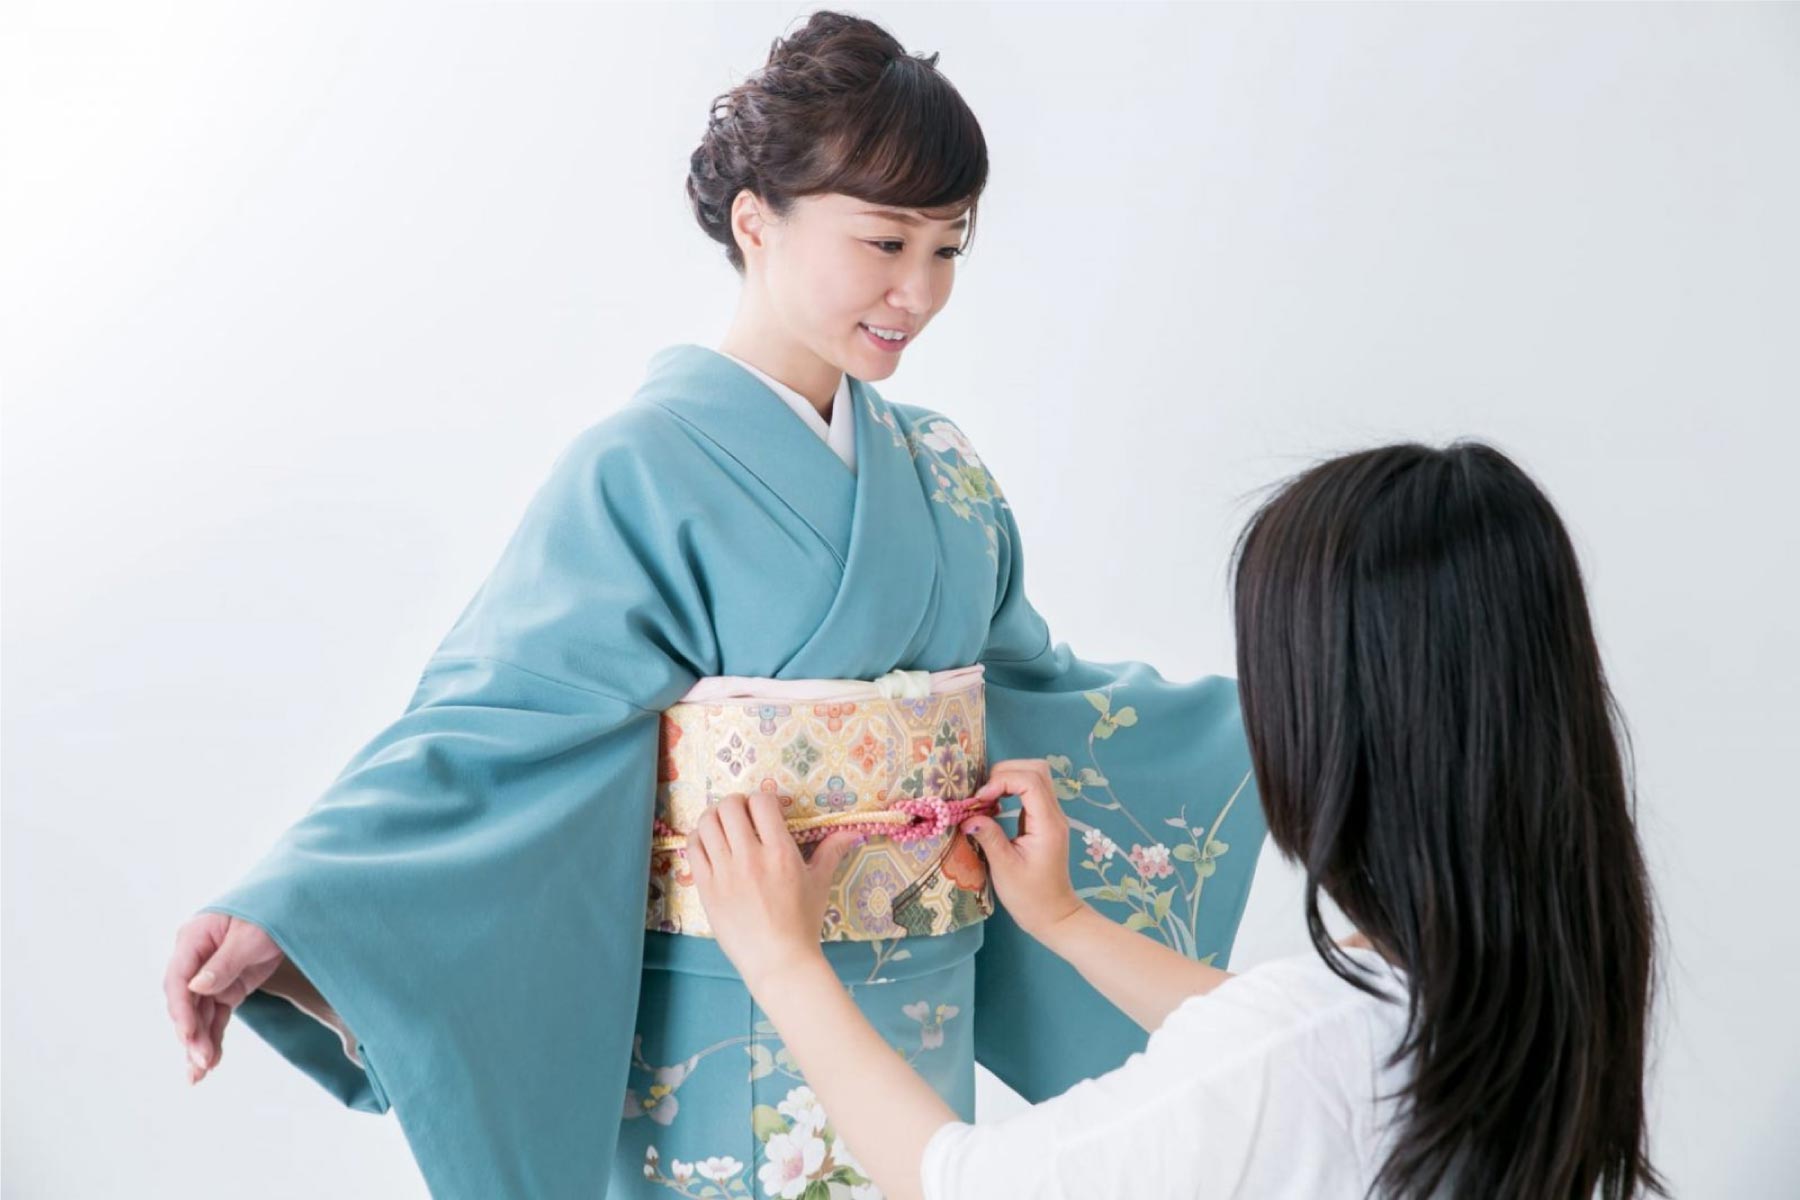 Cấu tạo và chất liệu của Kimono như thế nào?